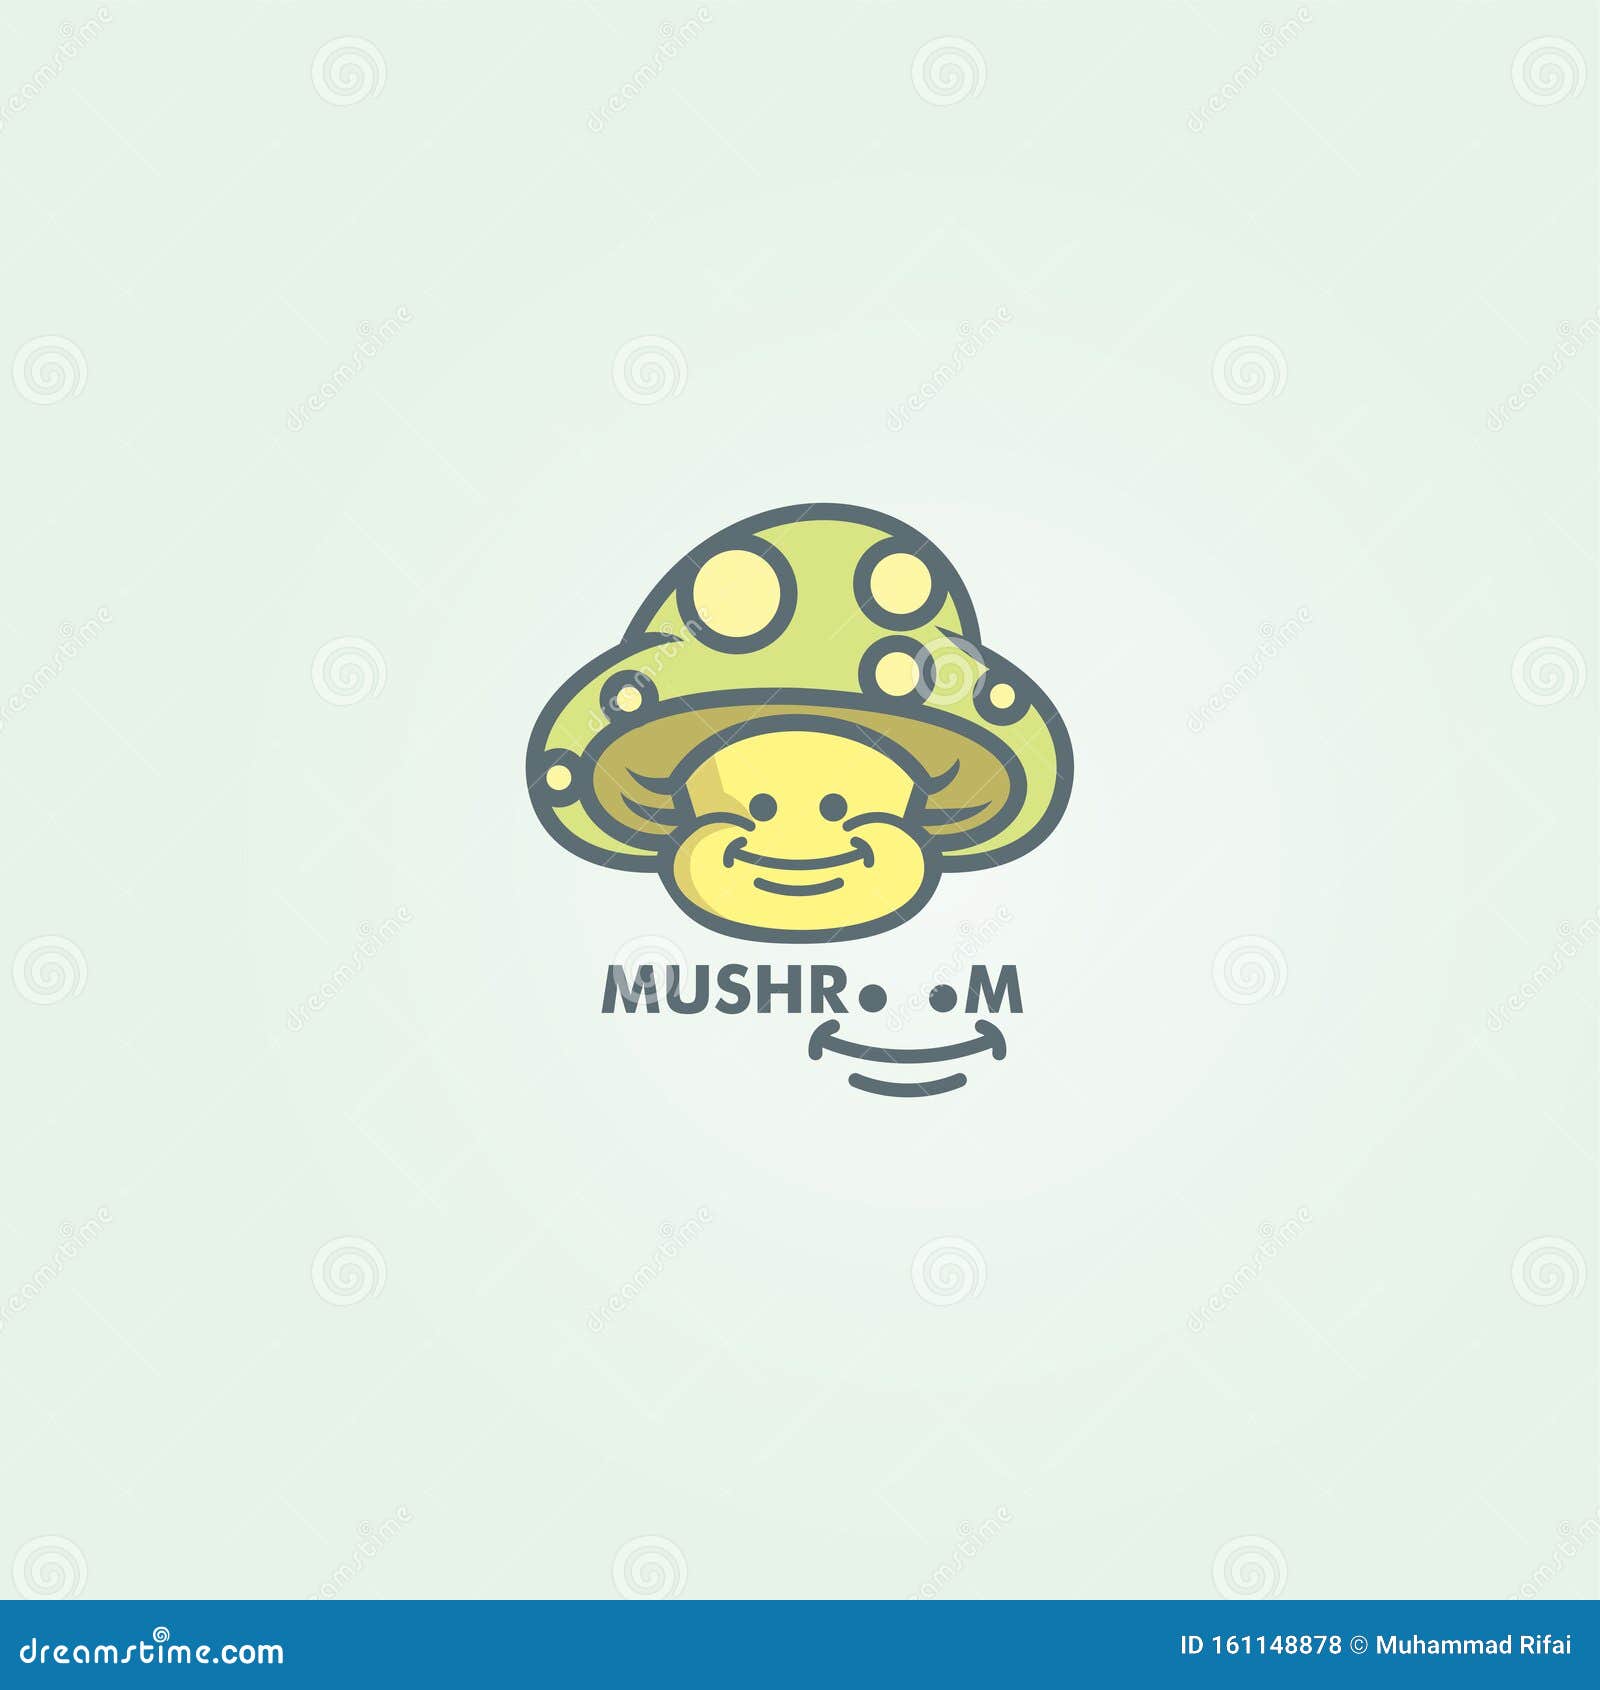 mushroomhead logo